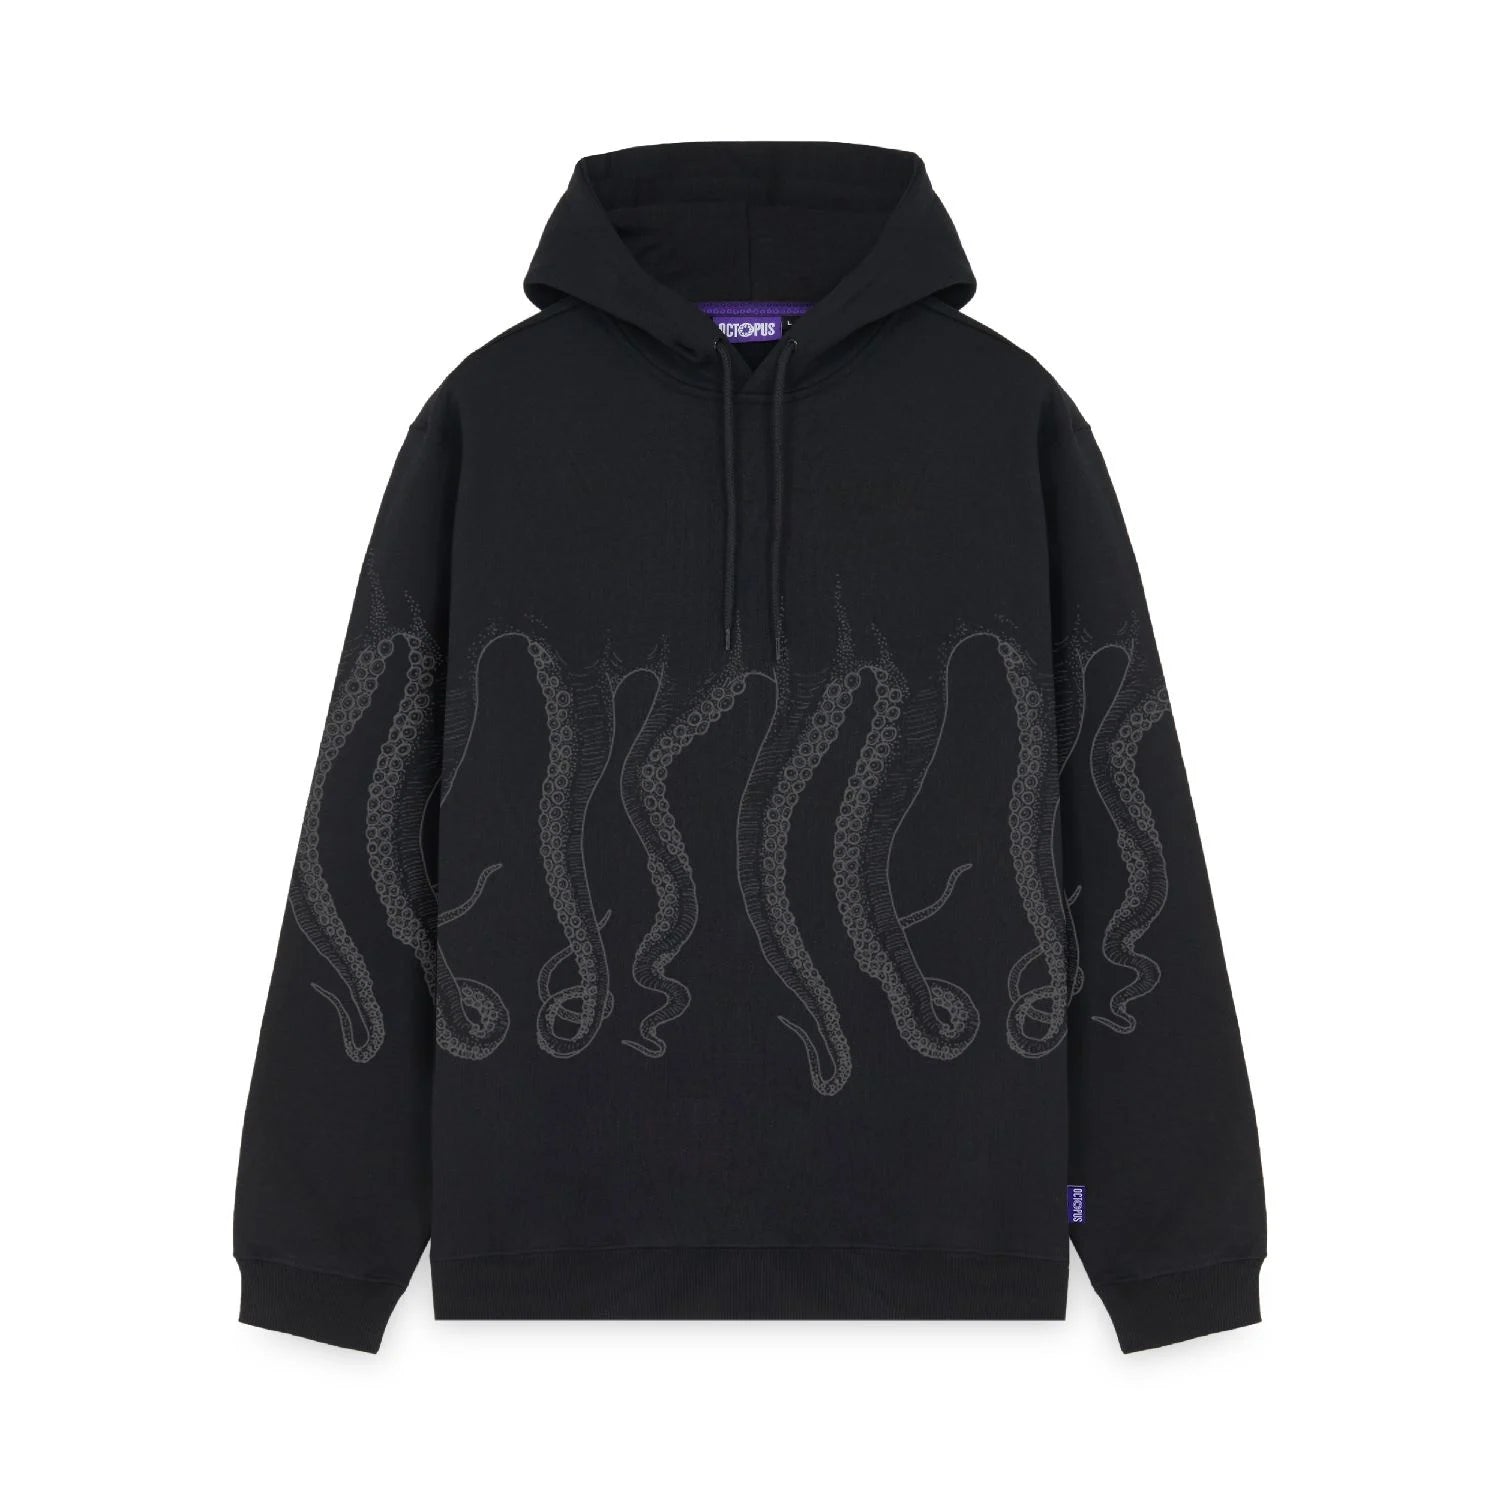 Octopus Outline Hoodie (Black)